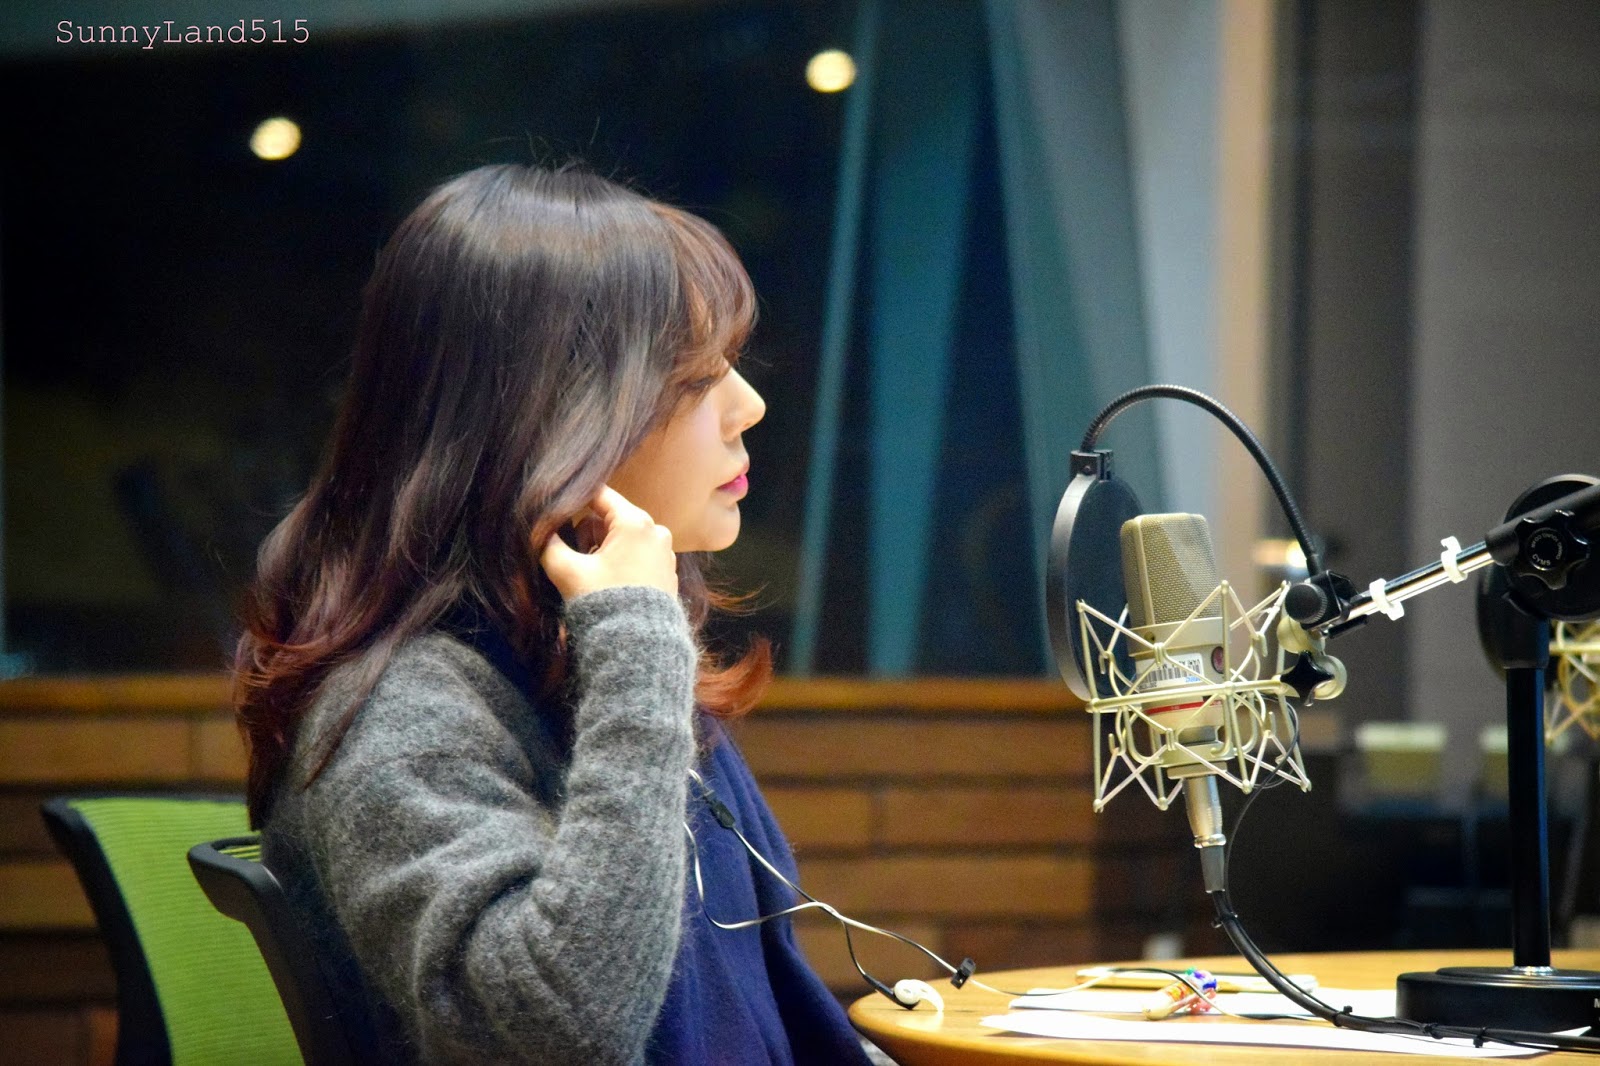 [OTHER][06-02-2015]Hình ảnh mới nhất từ DJ Sunny tại Radio MBC FM4U - "FM Date" - Page 10 DSC_0183_Fotor